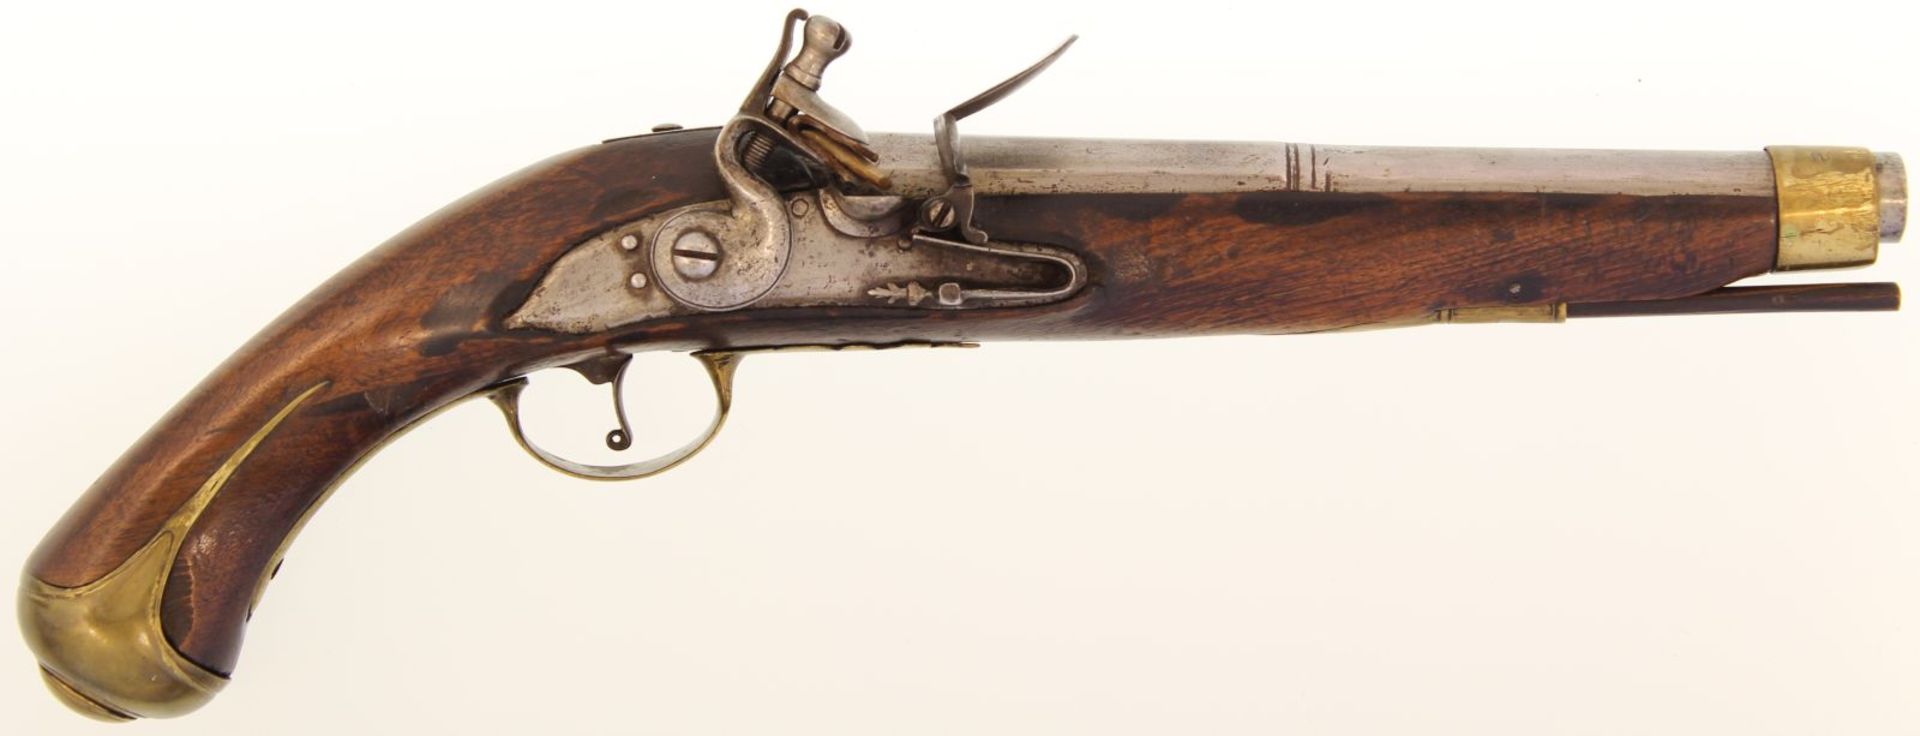 Steinschlosspistole, Deutsch, Kal. 17.8mm. 26cm-langer Achtkantlauf in rund übergehend, Suhler